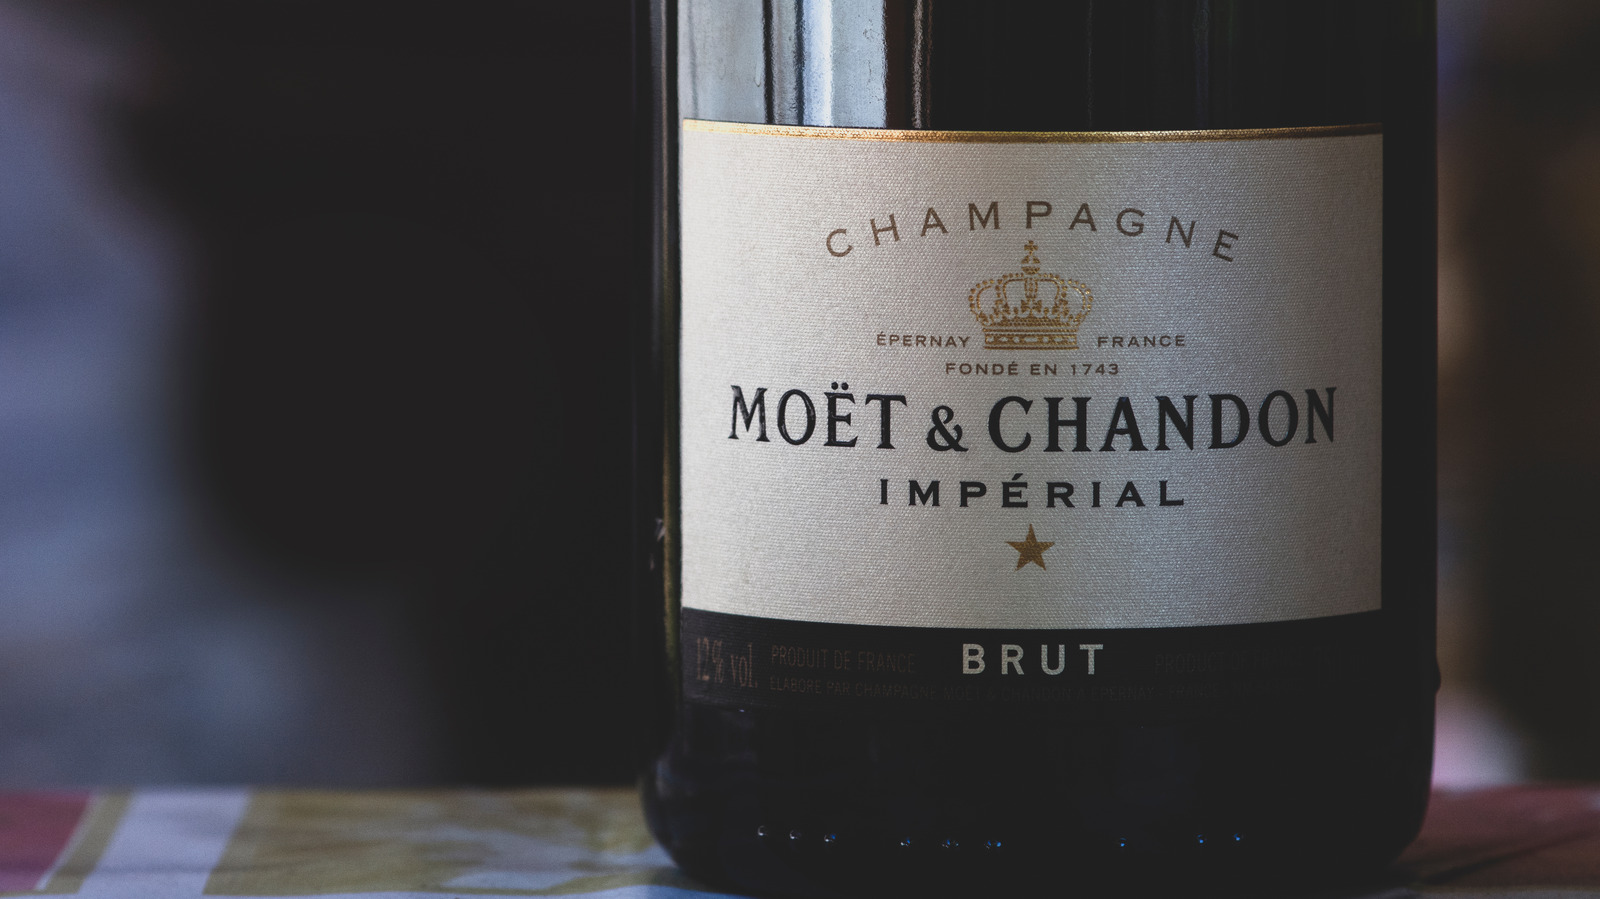 Champagne Mini Moët Impérial Brut - Moët & Chandon